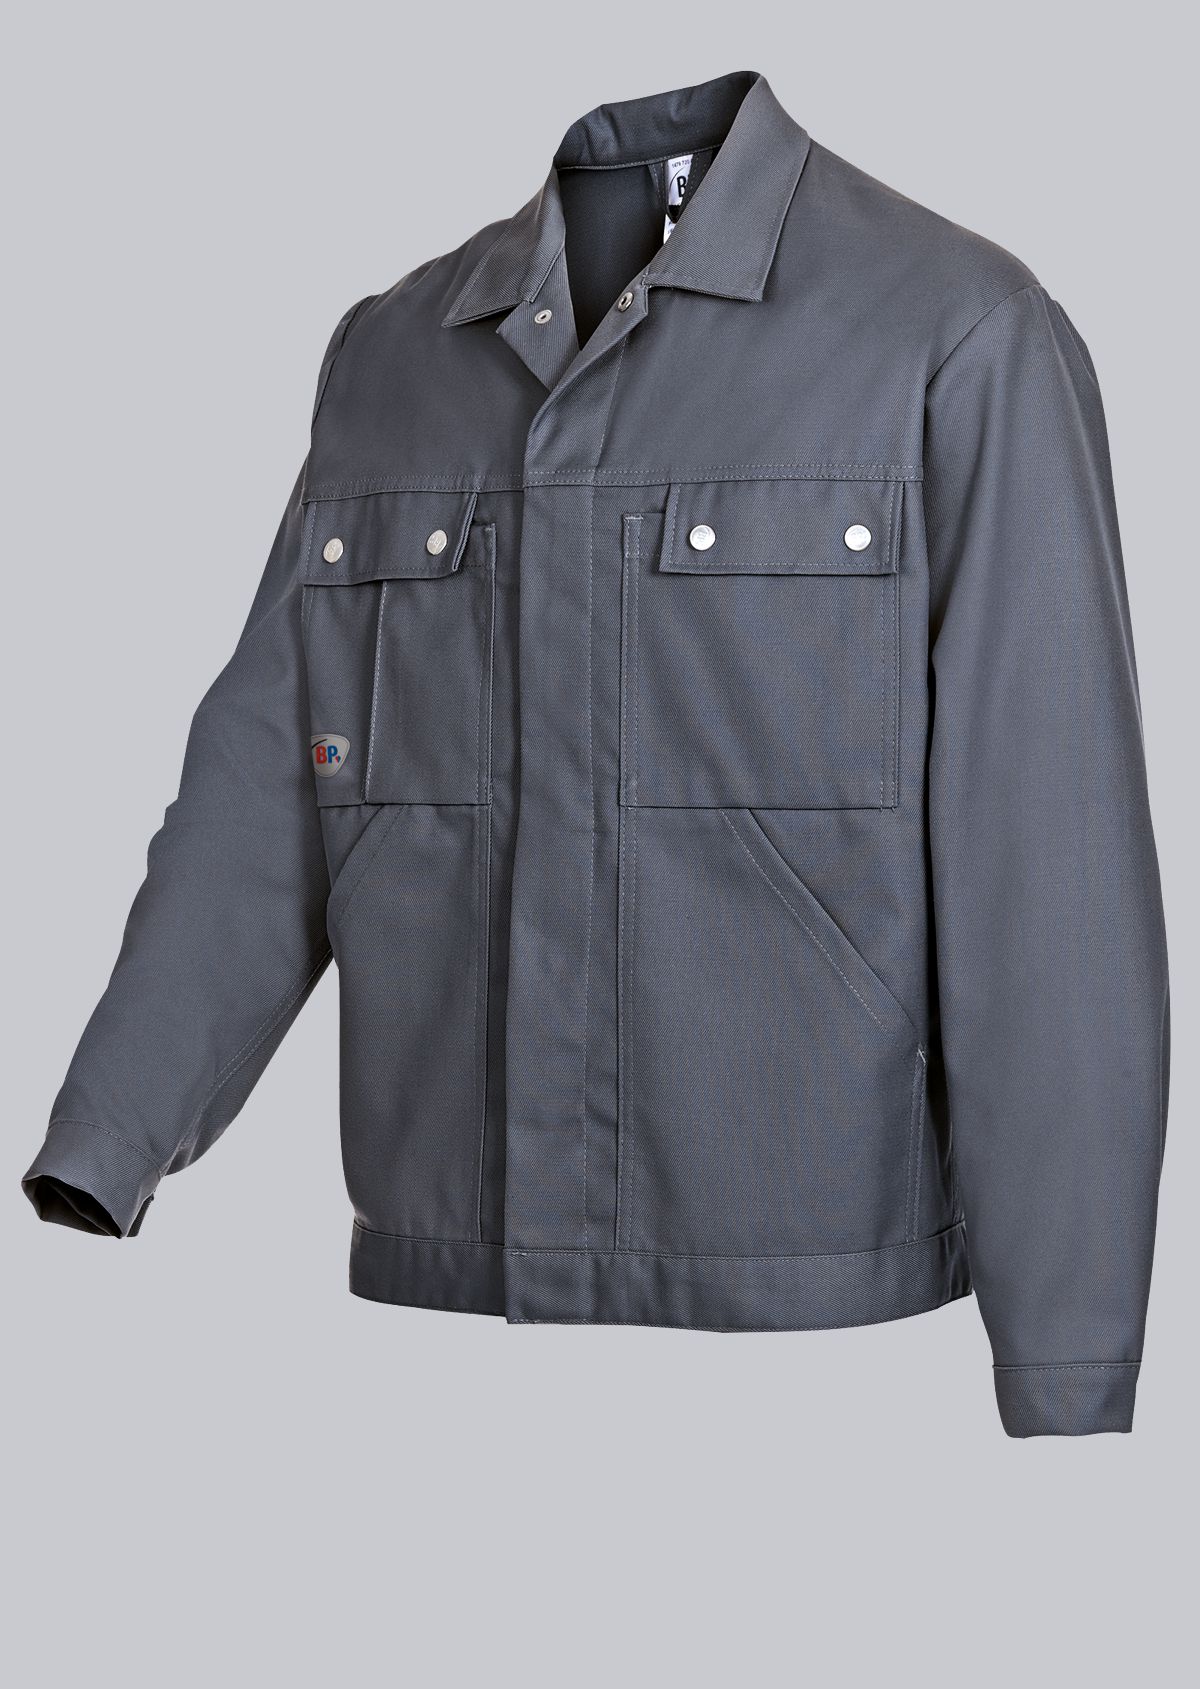 BP® Comfort work jacket